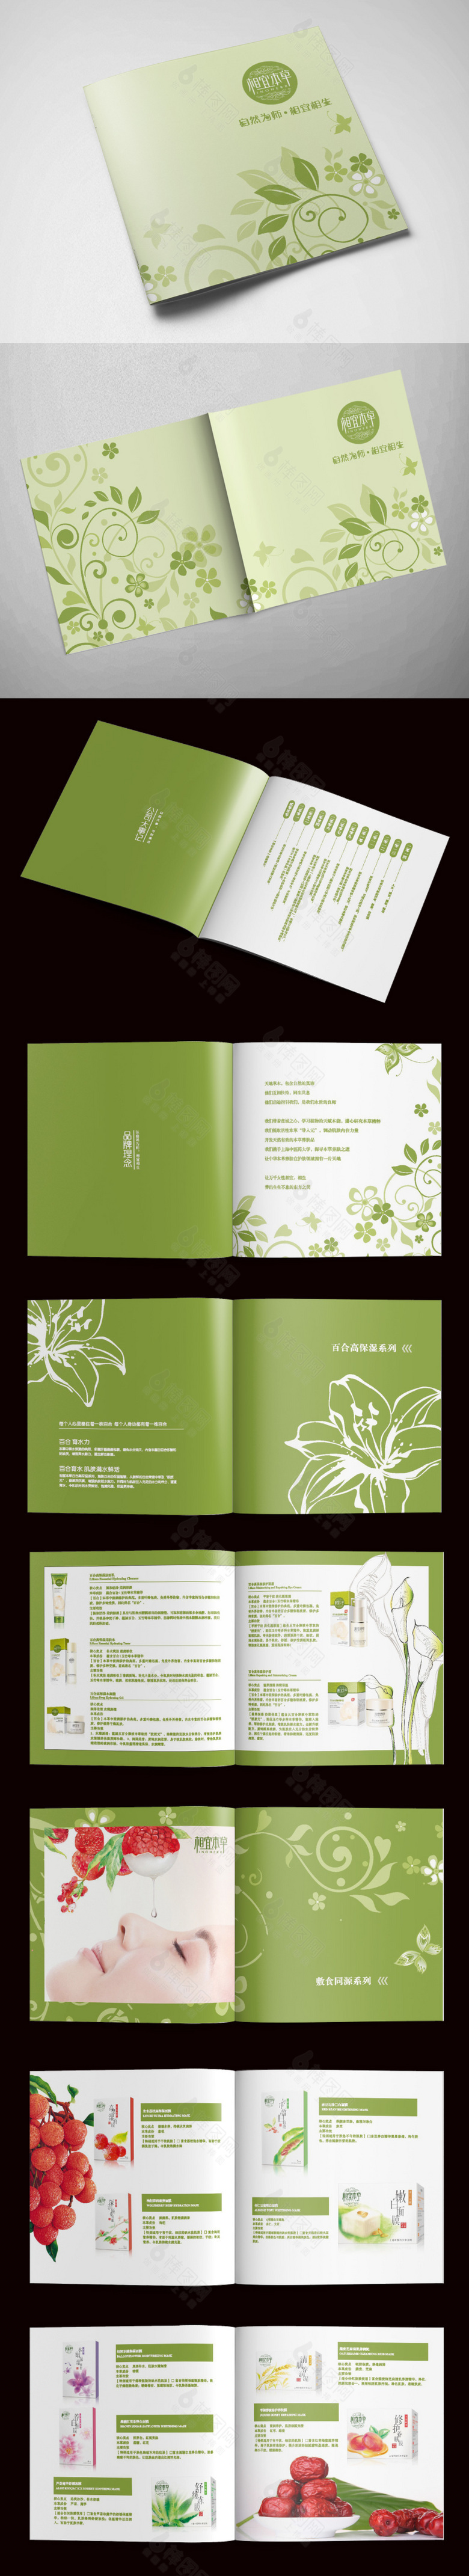 清新植物化妆品画册